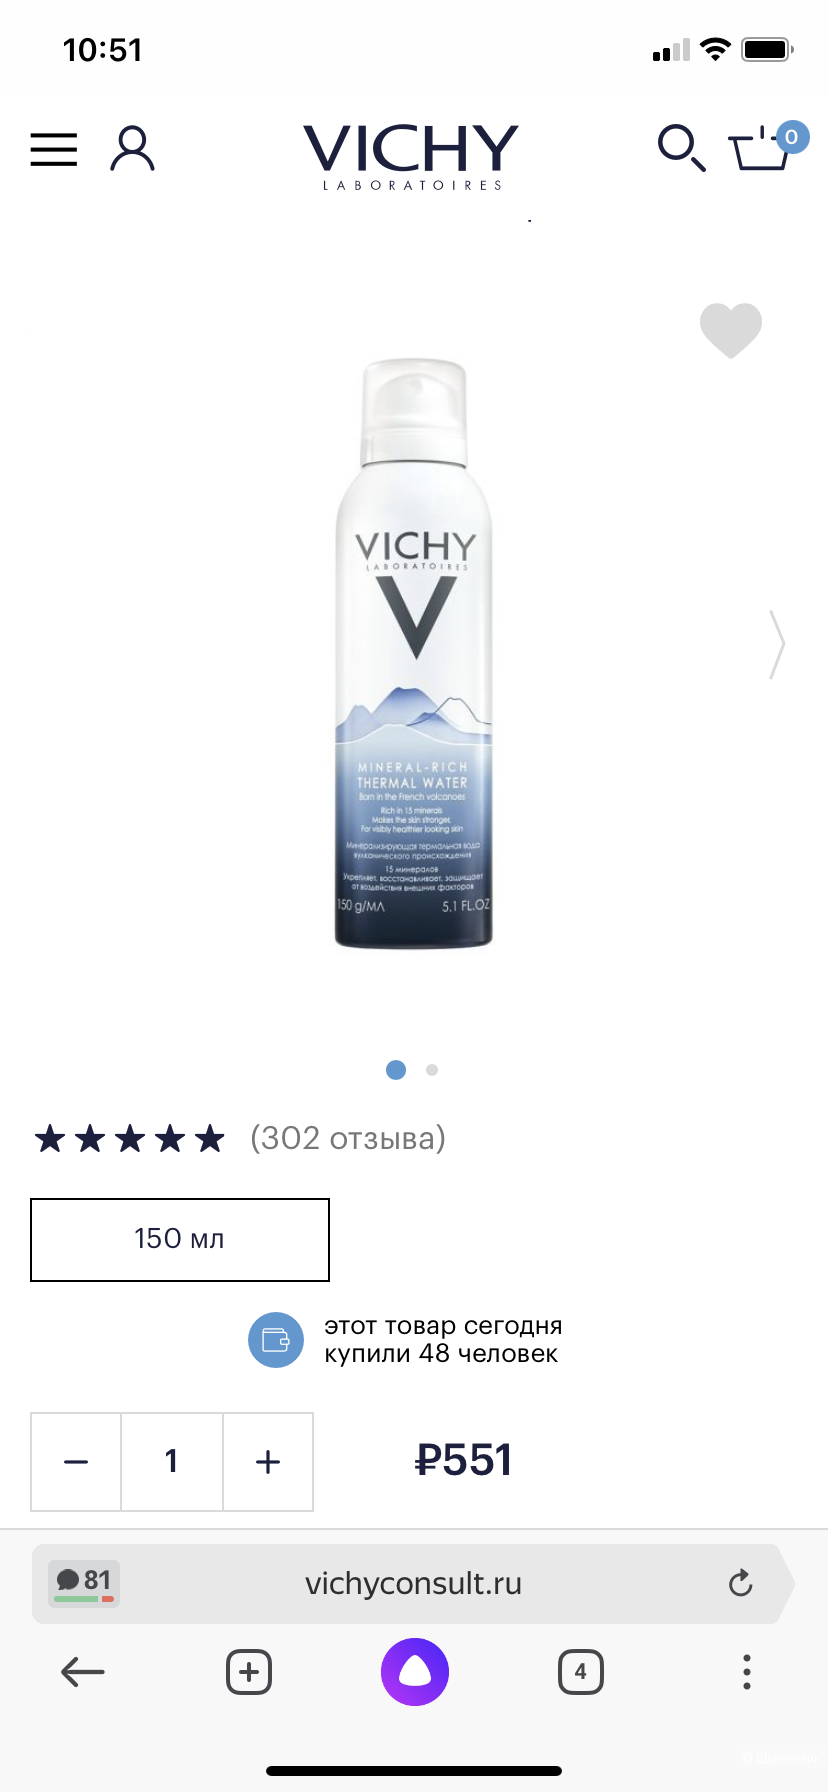 Сет косметических ср-в Vichy: Солнцезащитная эмульсия.+ Термальная вода